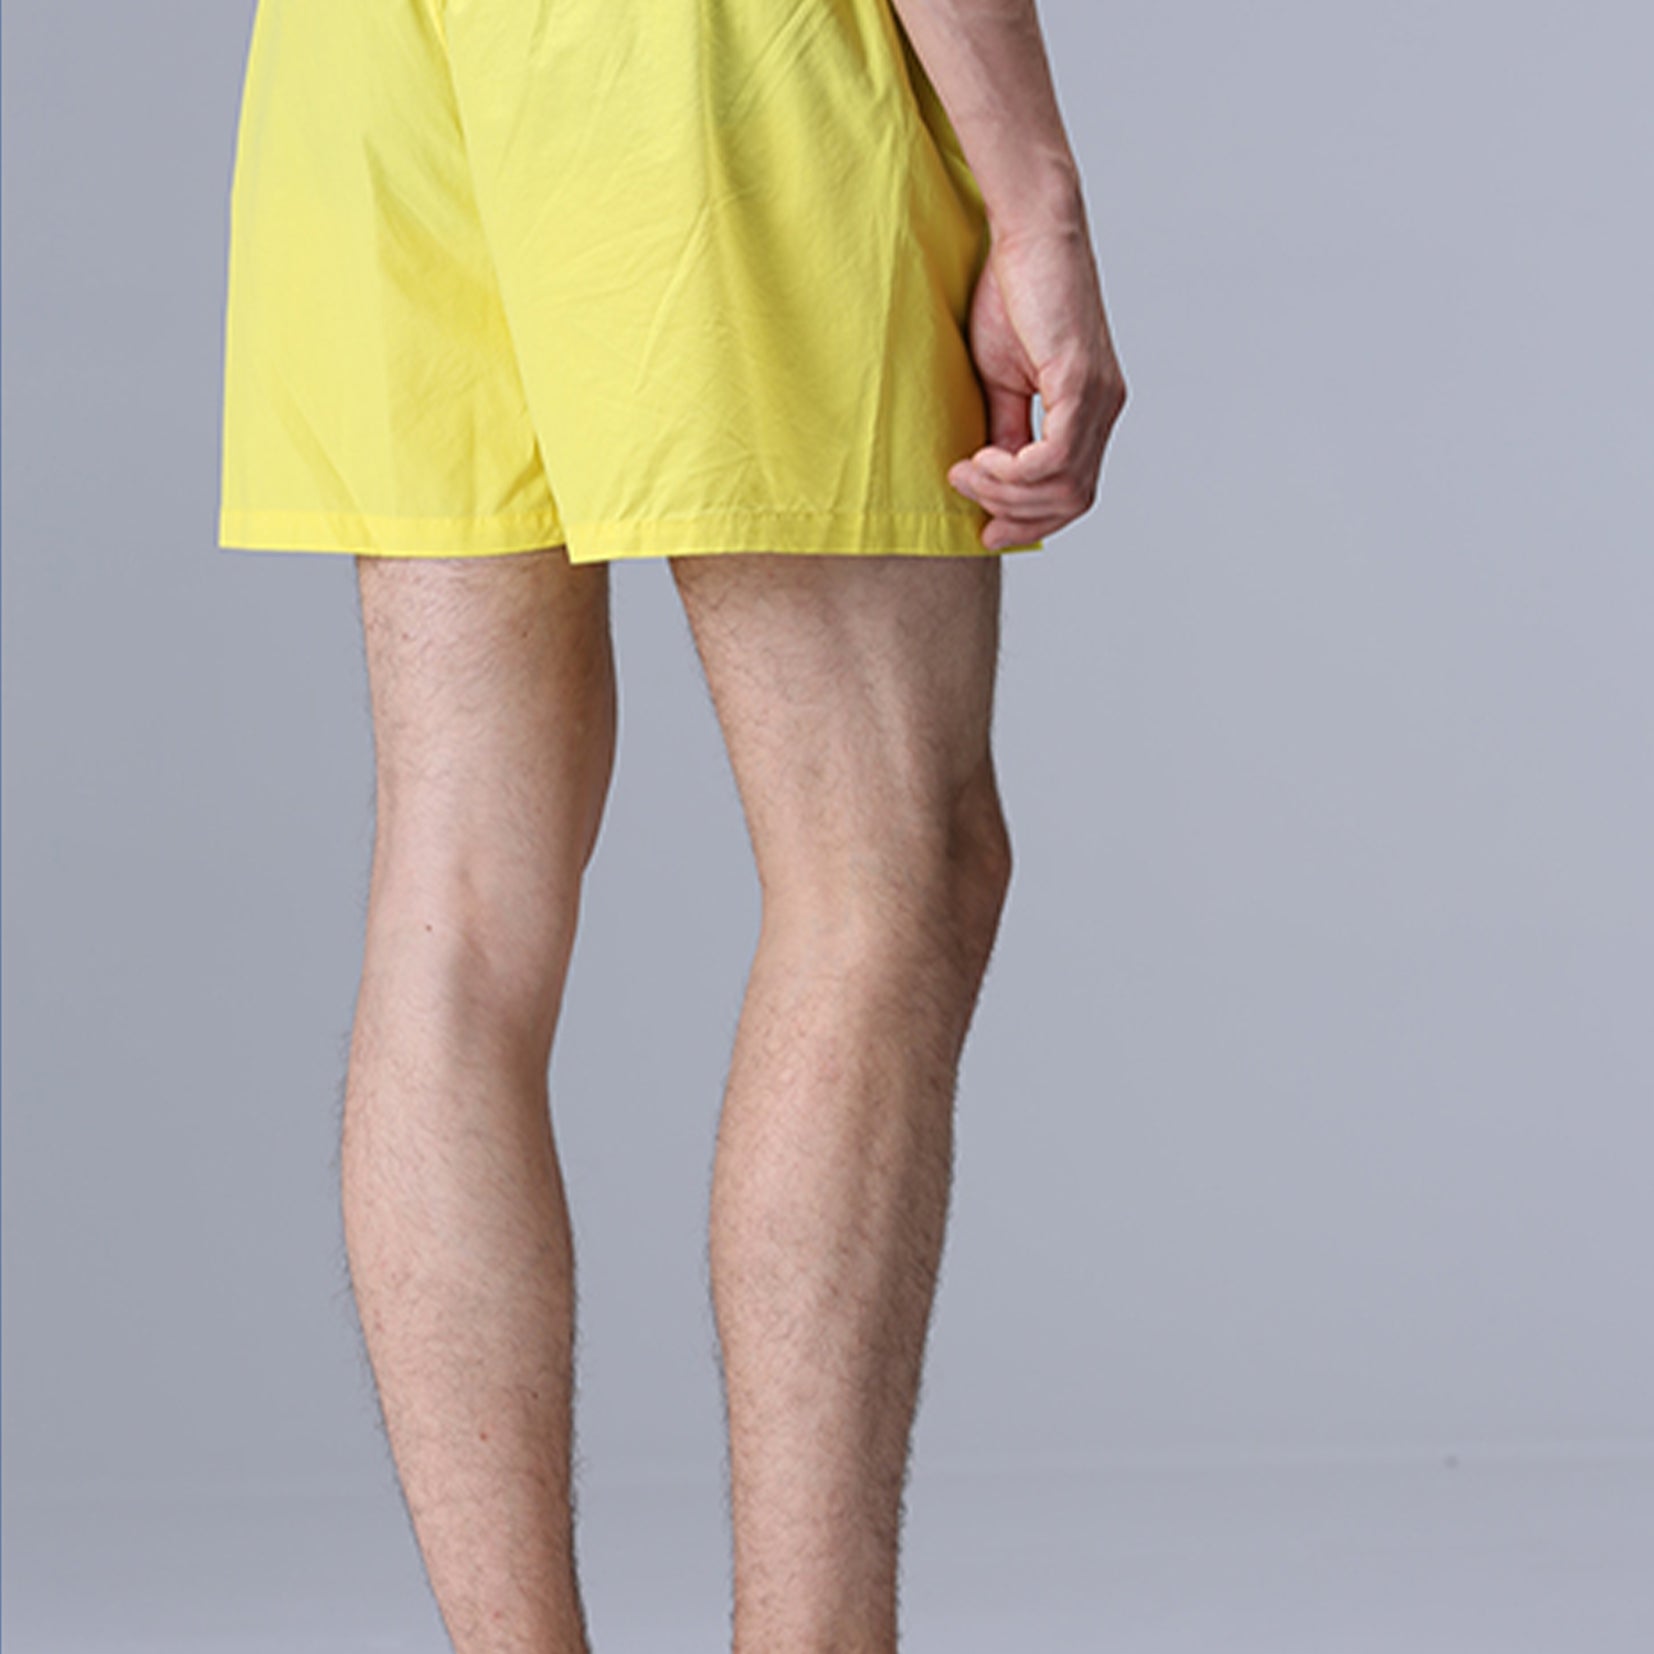 Unisex boxer shorts underwear in yellow